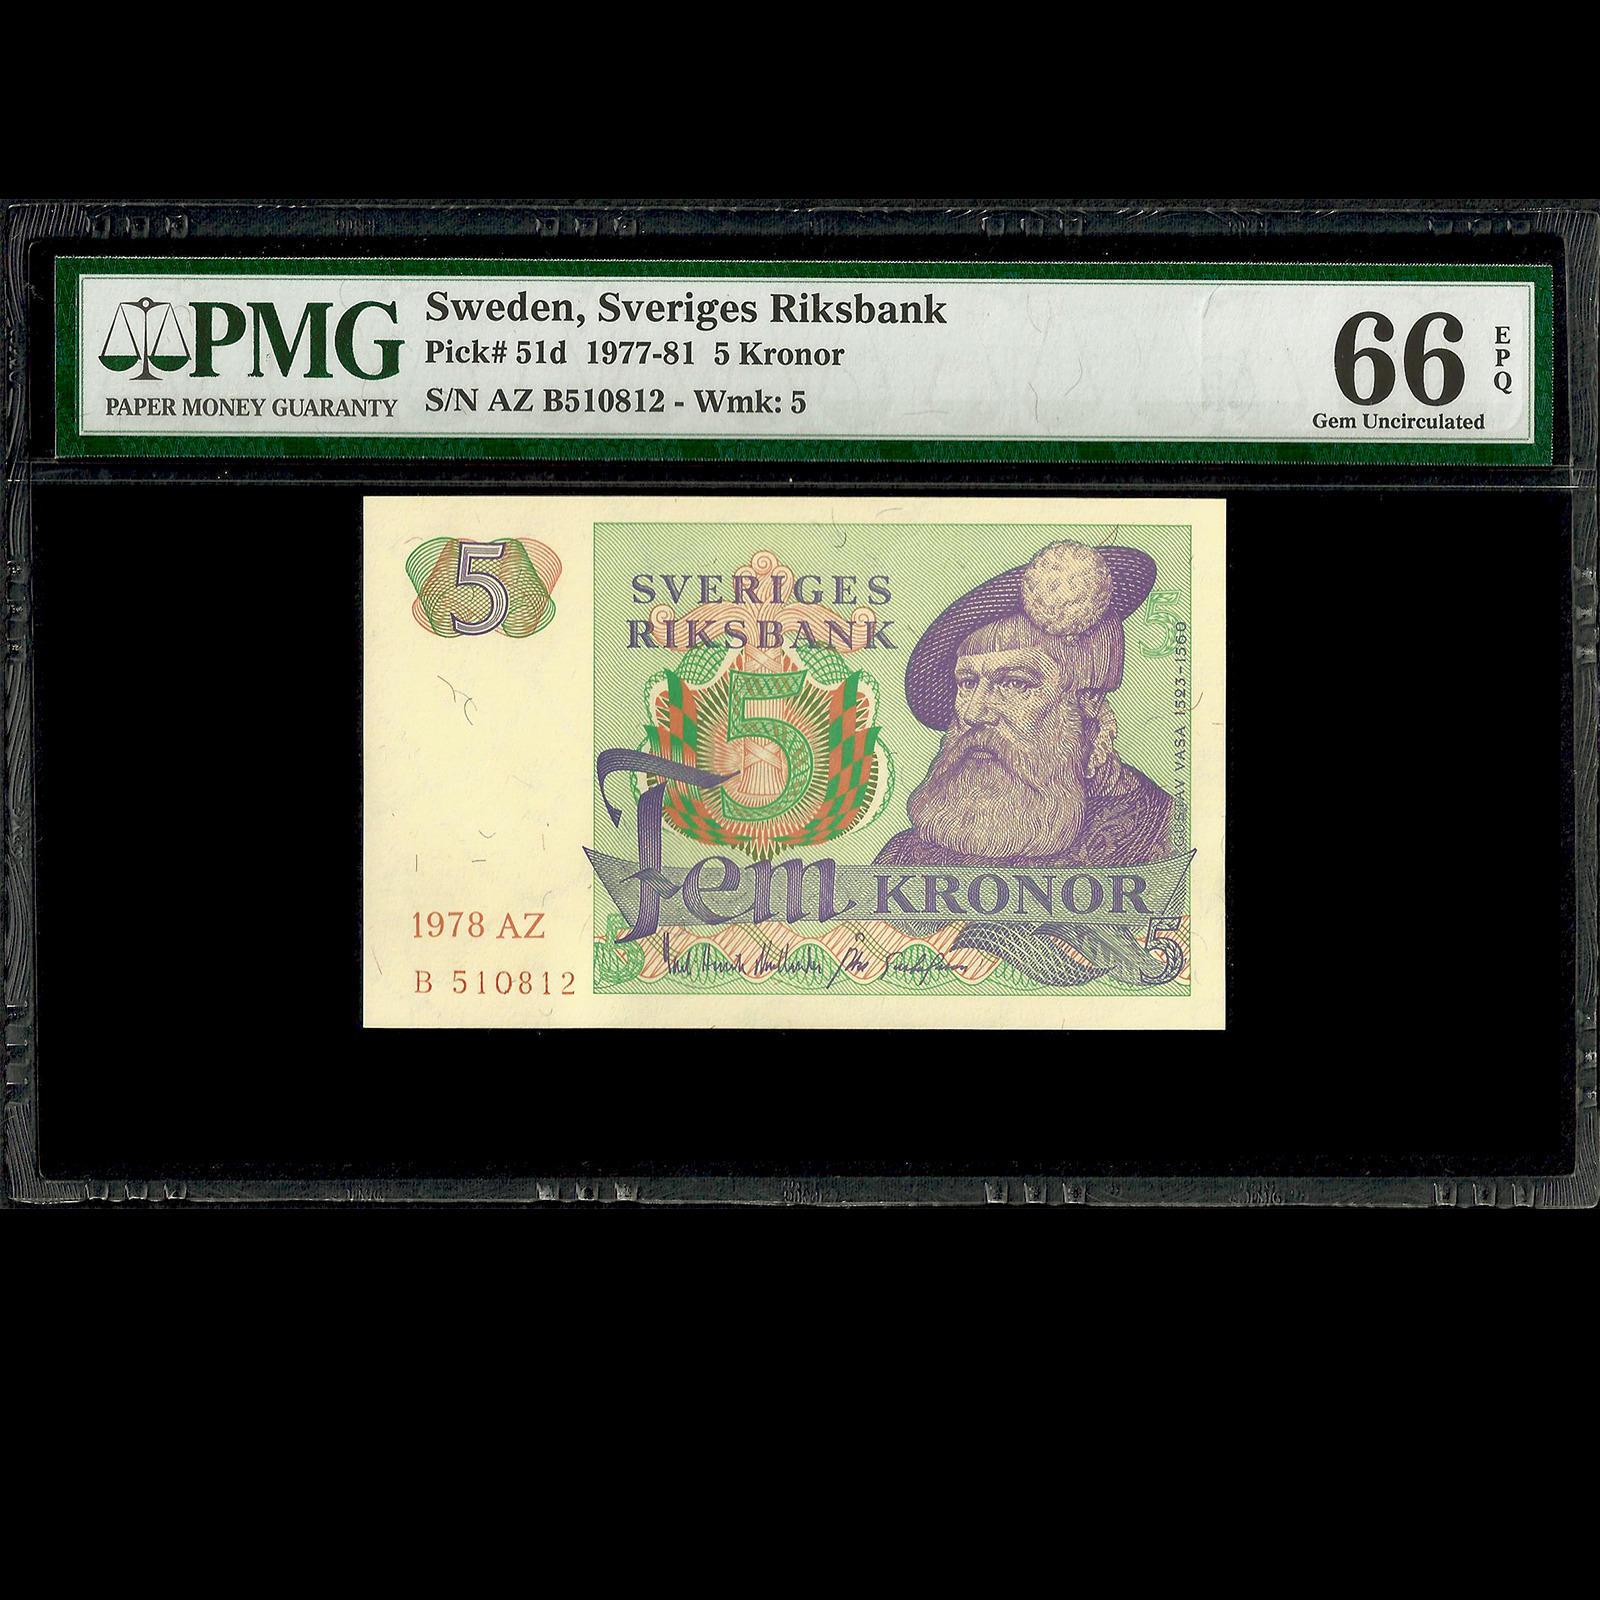 Sweden Sveriges Riksbank 5 Kronor 1978 PMG 66 GEM UNCIRCULATED EPQ P-51d